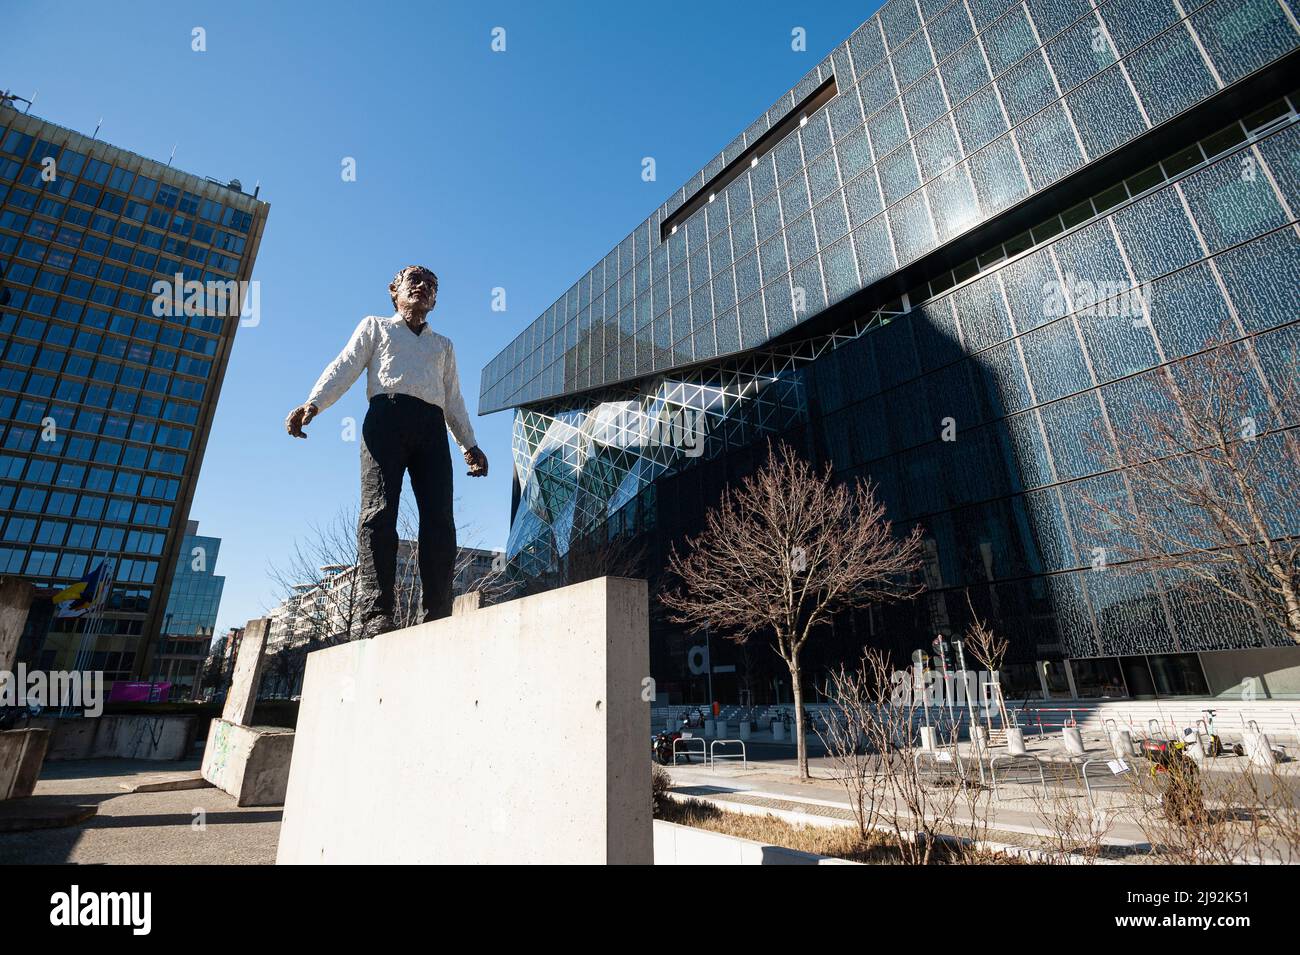 12.03.2022, Berlino, , Germania - Europa - la scultura Balanceakt è opera dello scultore tedesco Stephan Balkenhol e si trova di fronte all'Axel S. Foto Stock